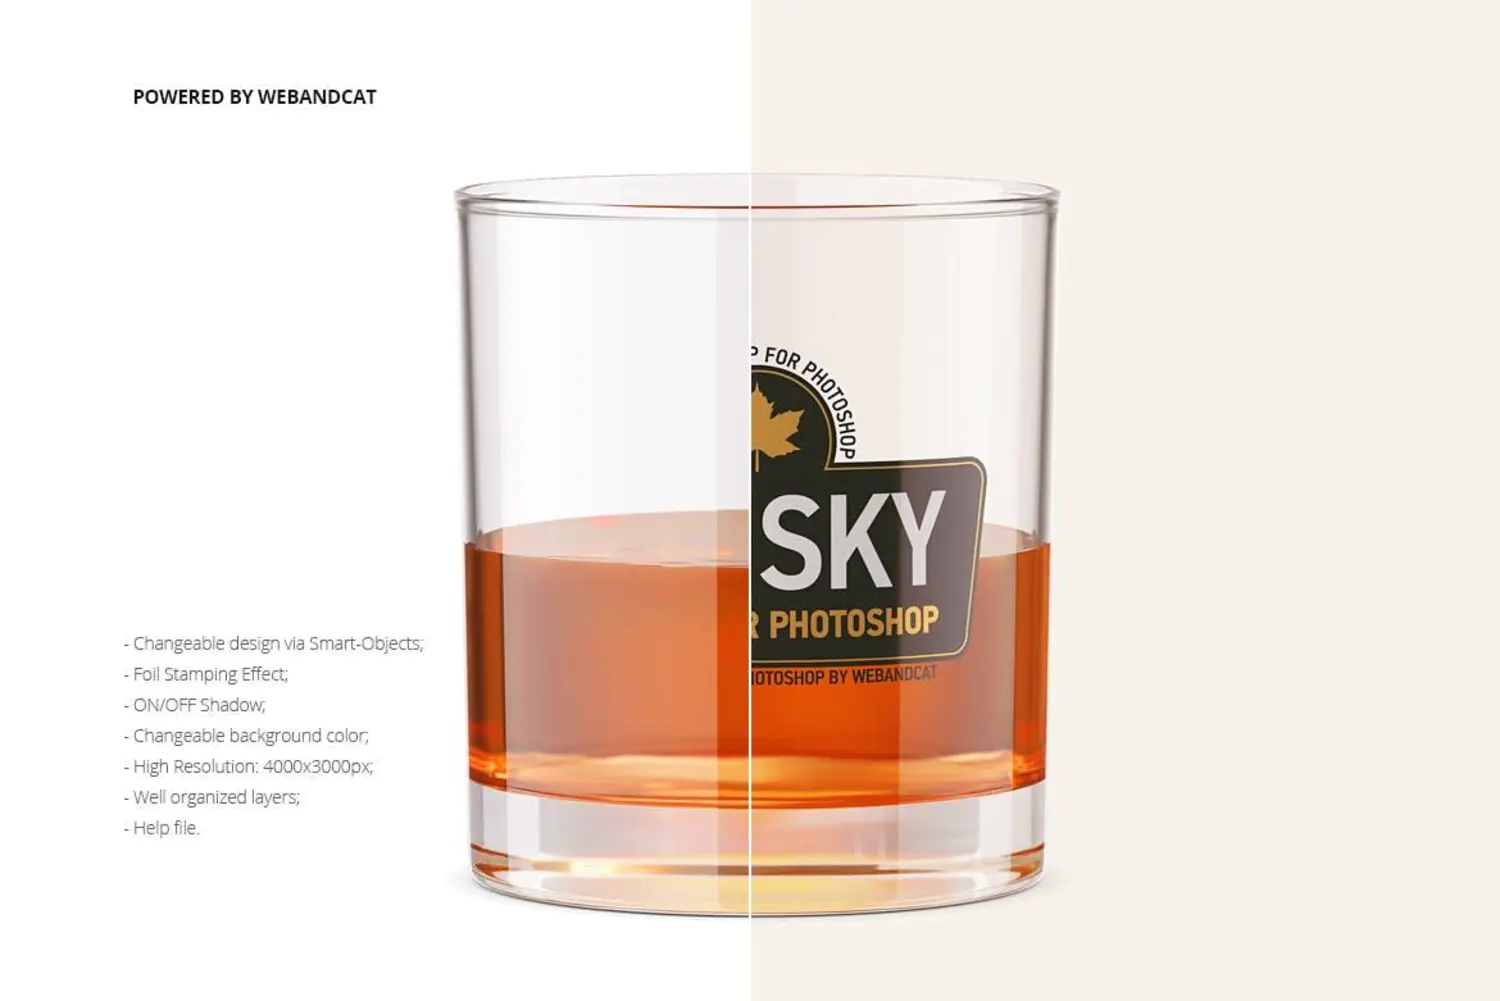 39 威士忌透明玻璃酒杯标签设计样机Whiskey Glass Mockup